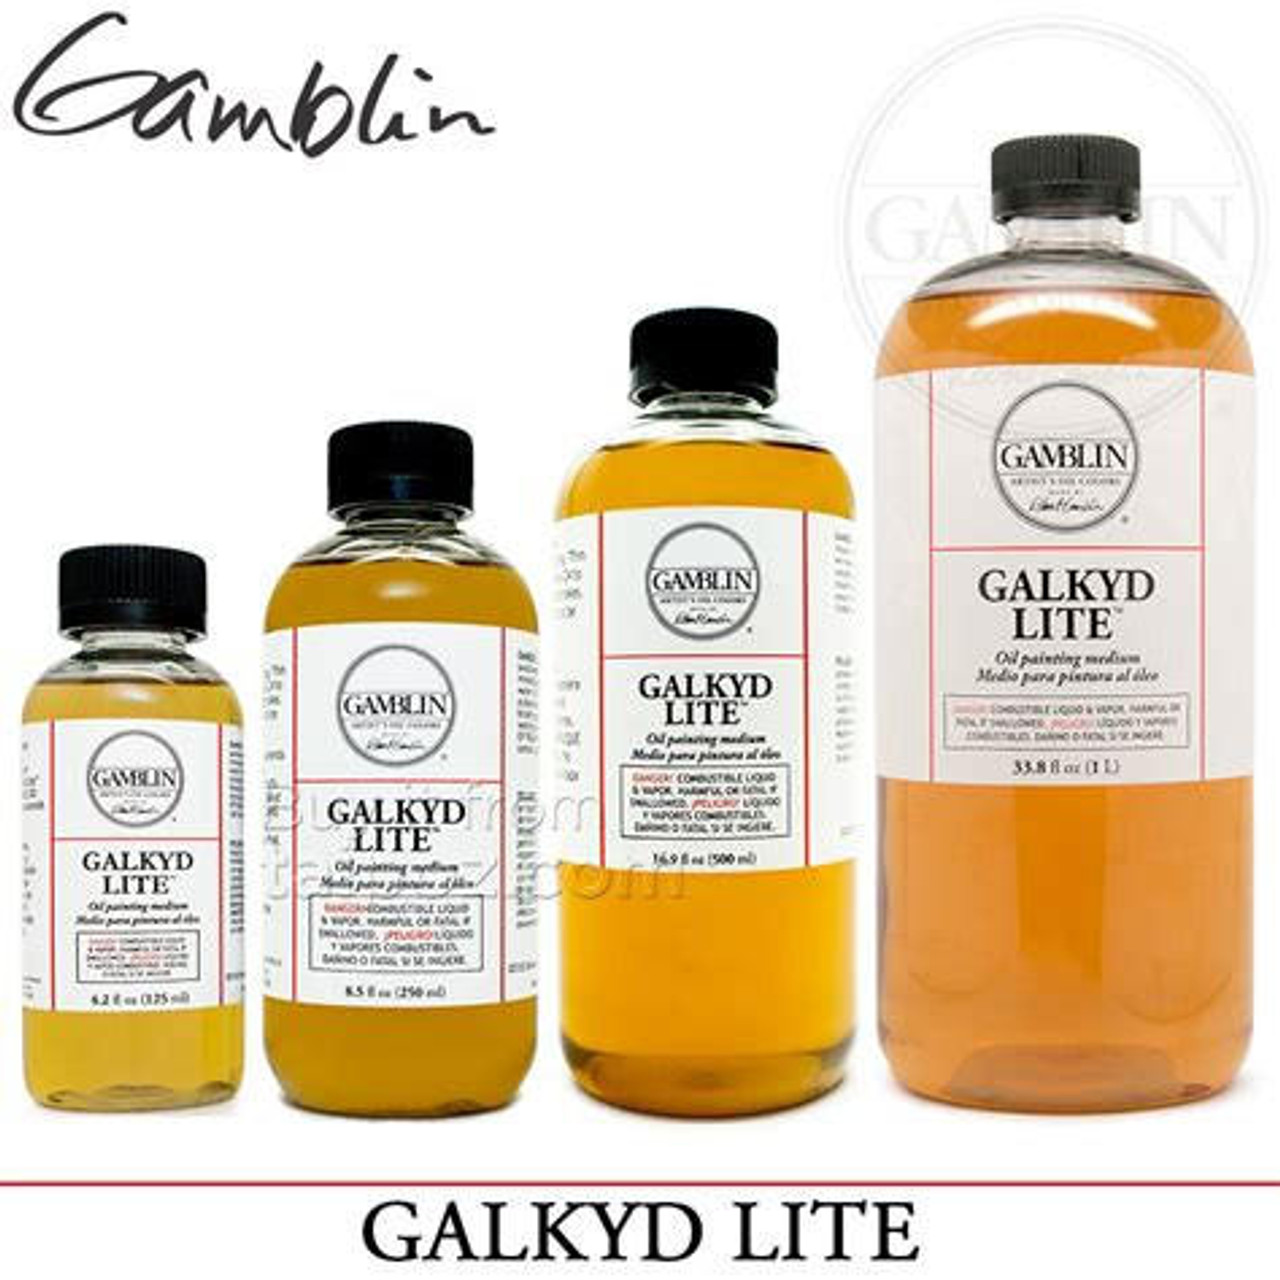 GAMBLIN ARTIST'S OIL COLORS GALKYD Oil painting medium (125 ml